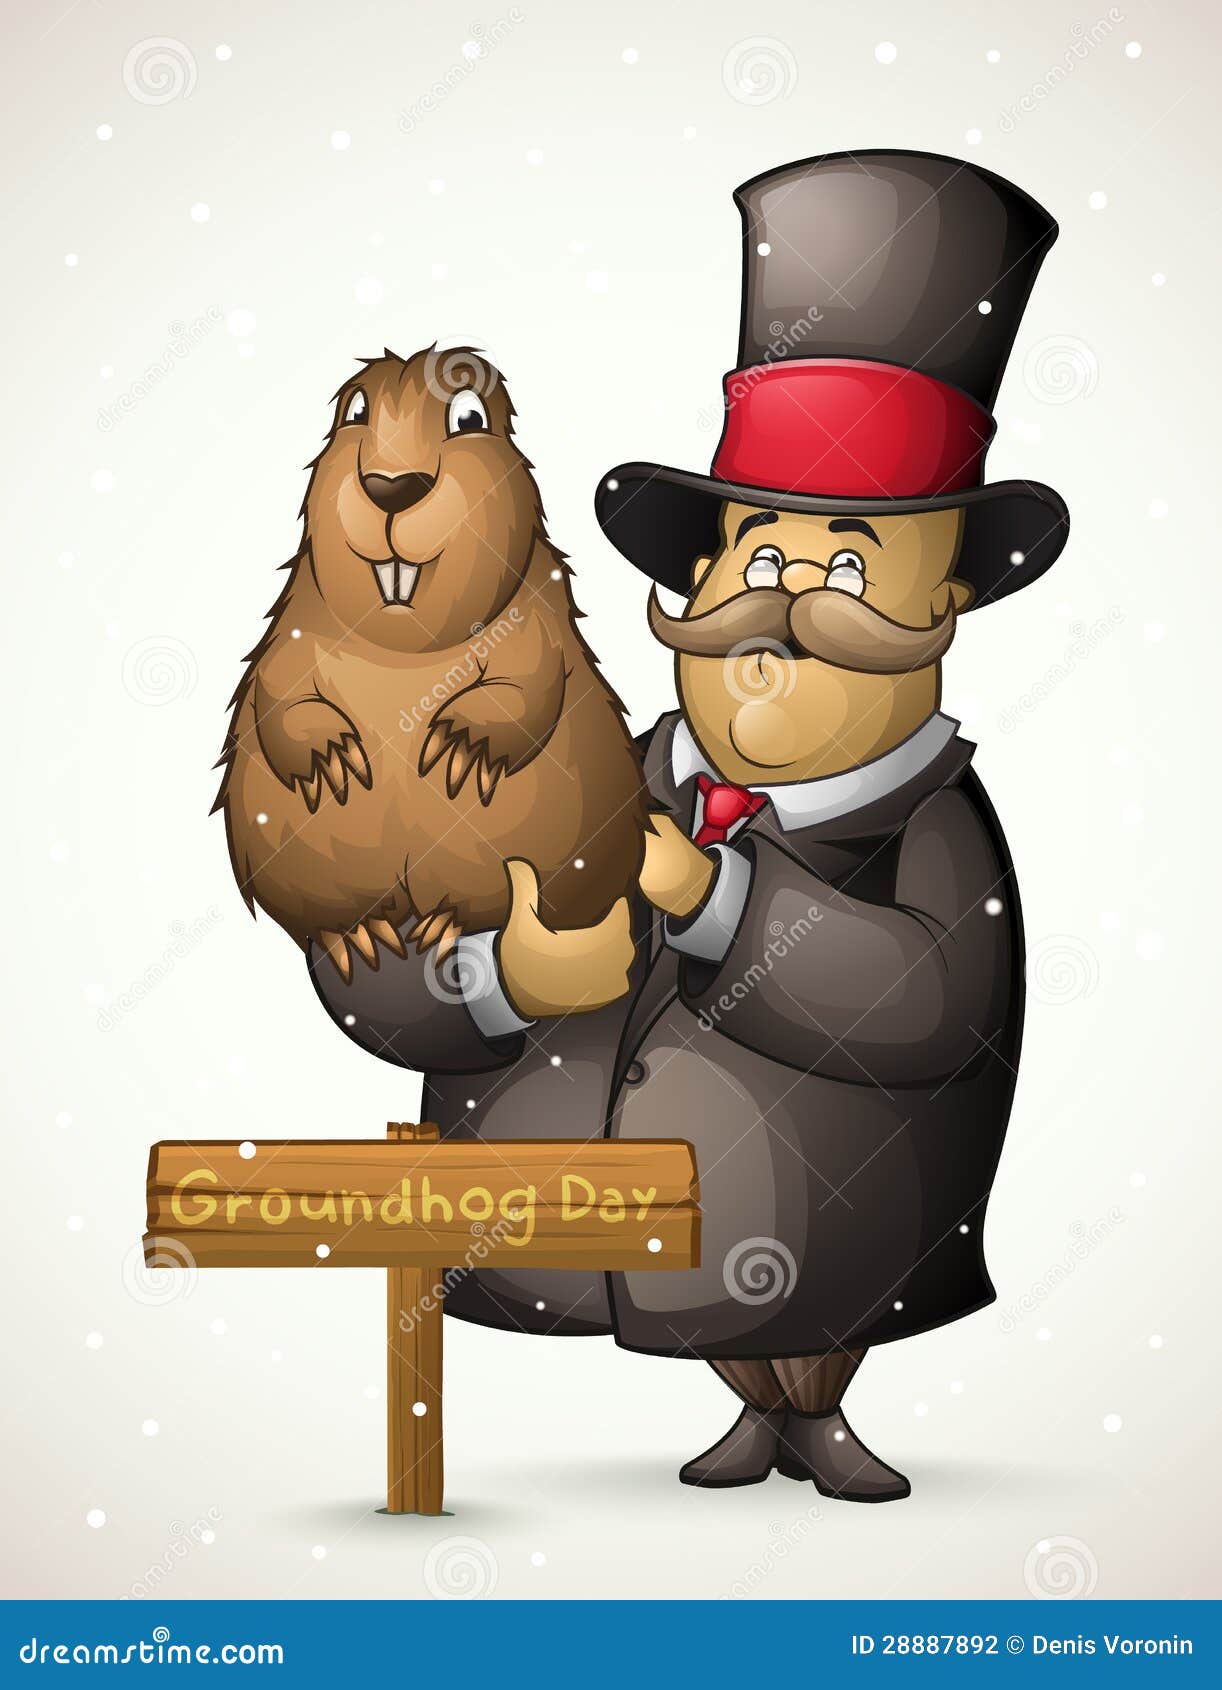 marmot and man on groundhog day